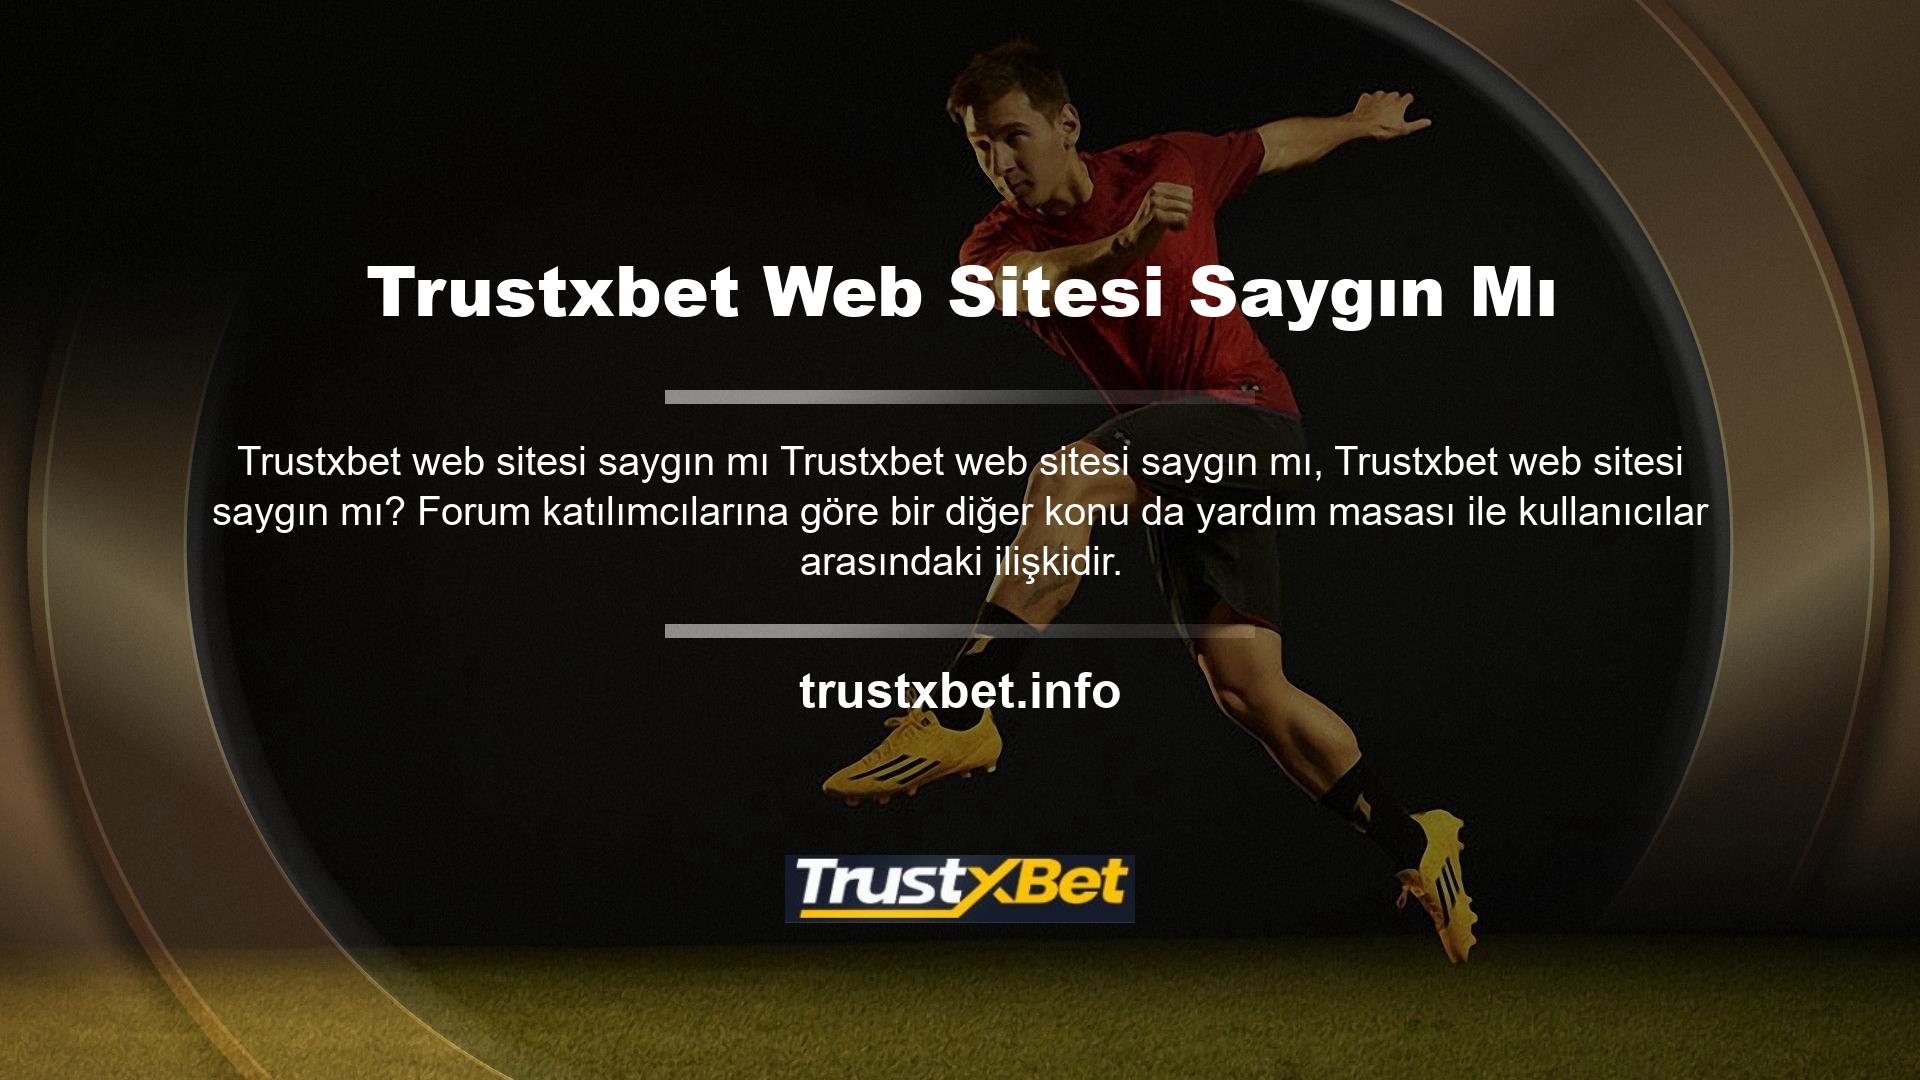 Trustxbet, forumlarda ve web sitelerinde gezinirken şikayetlere izin veriyor mu? Böyle bir değiş tokuşun gerçekleştiğine dikkat edilmelidir